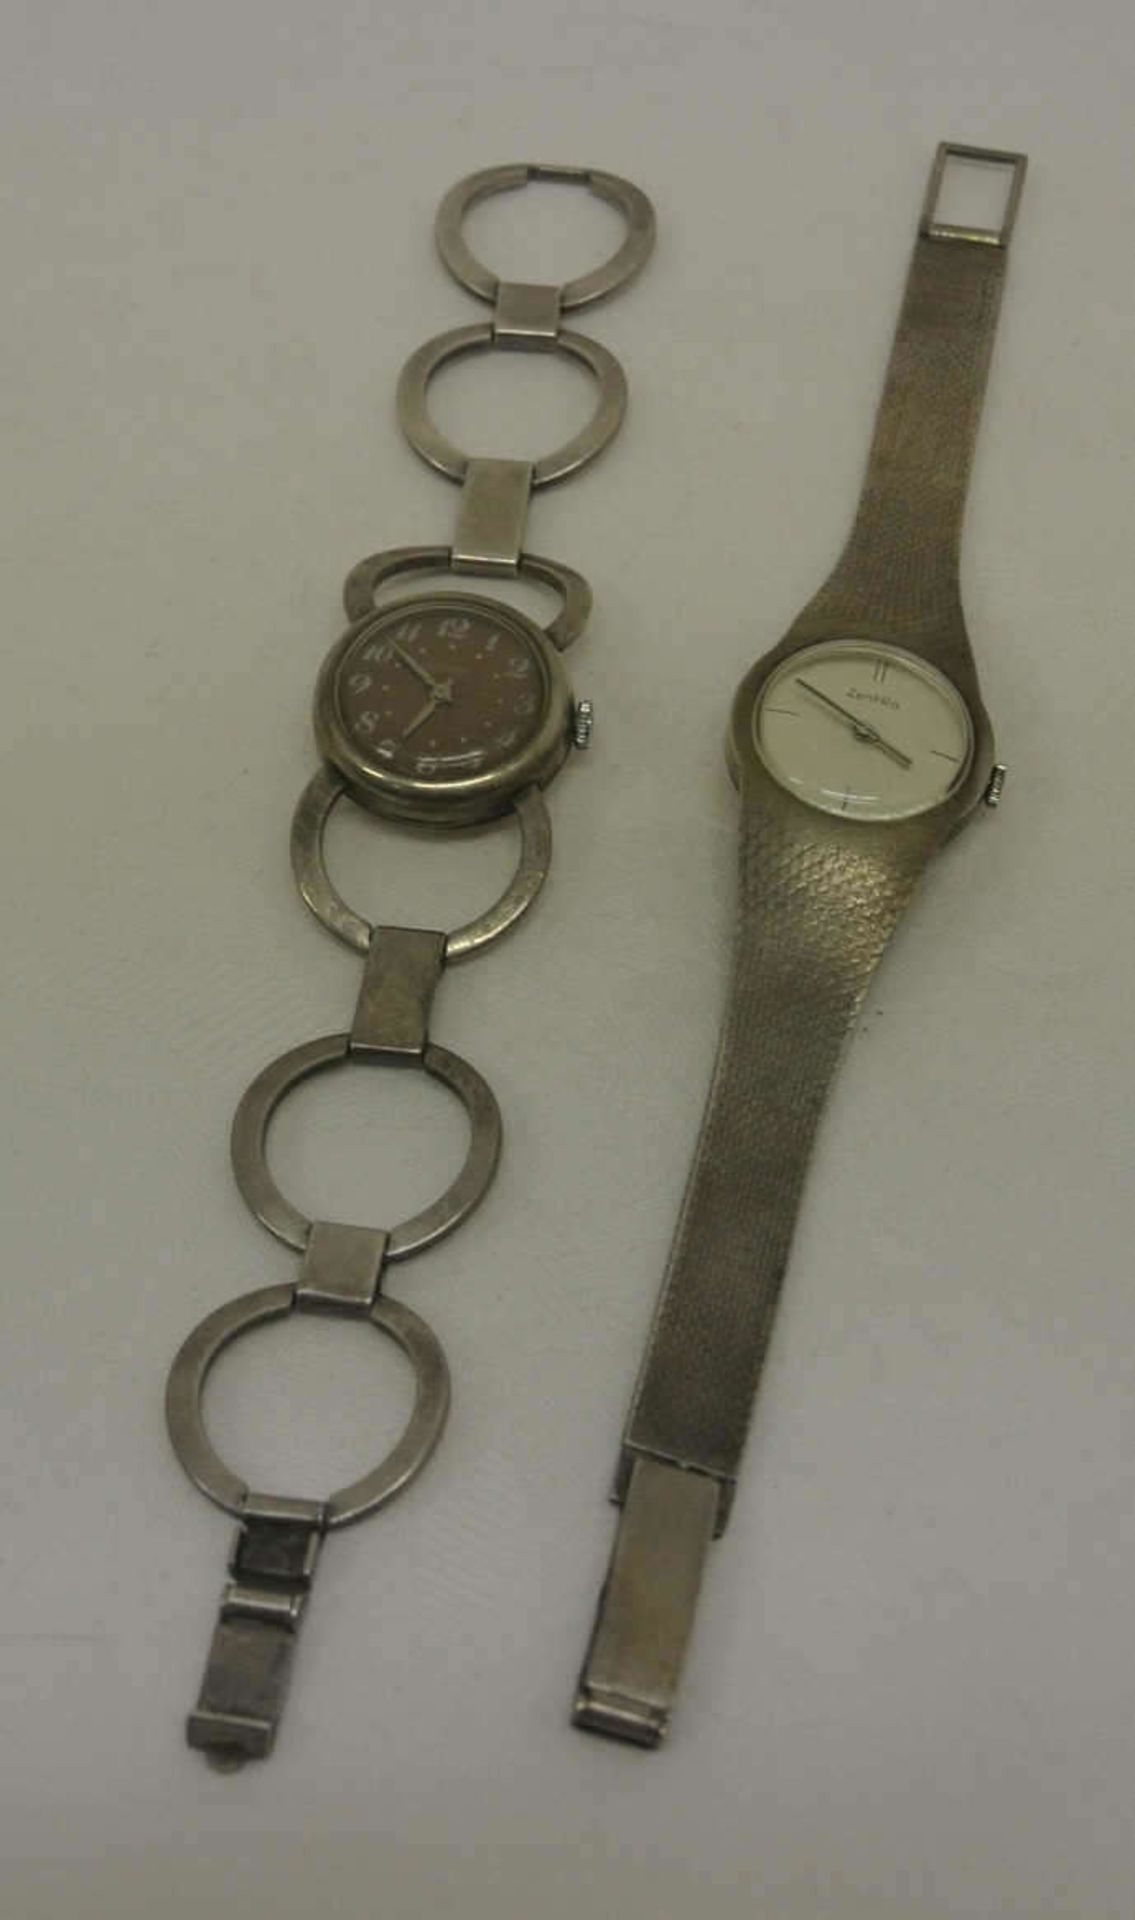 2 Damenarmbanduhren, 1x ZentRa, 835er Silber, mechanische, sowie 1x Adora, mechanisch. Beide Uhren